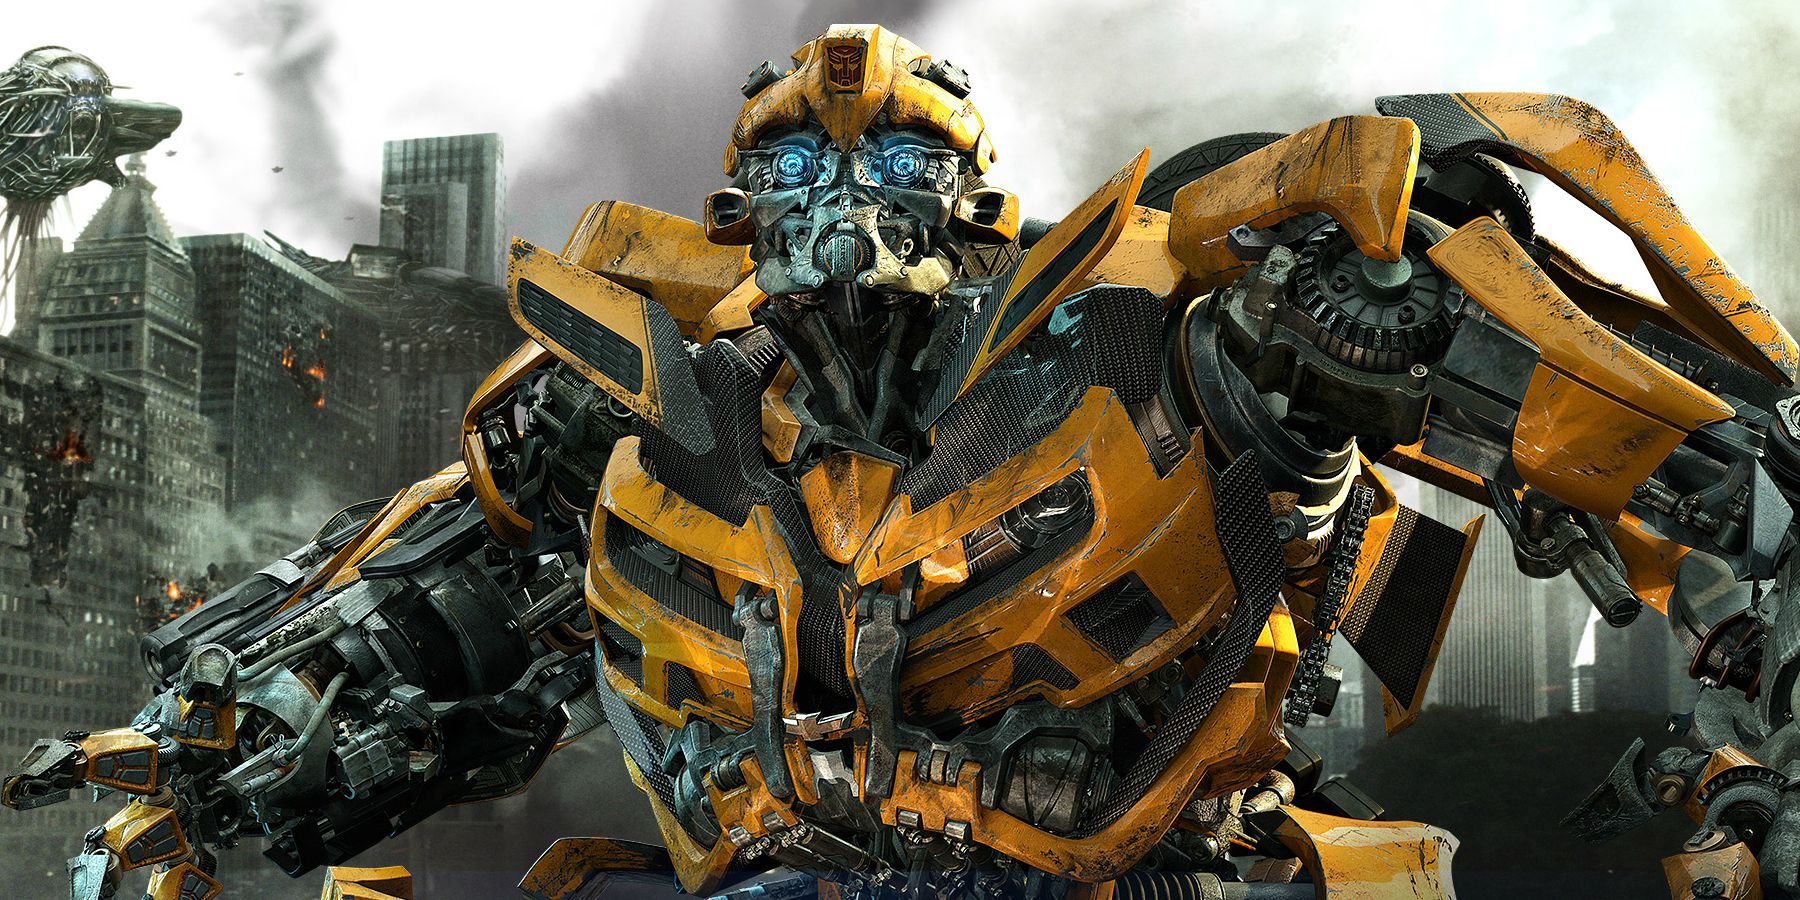 Pôster Bumblebee de Transformers Dark of the Moon